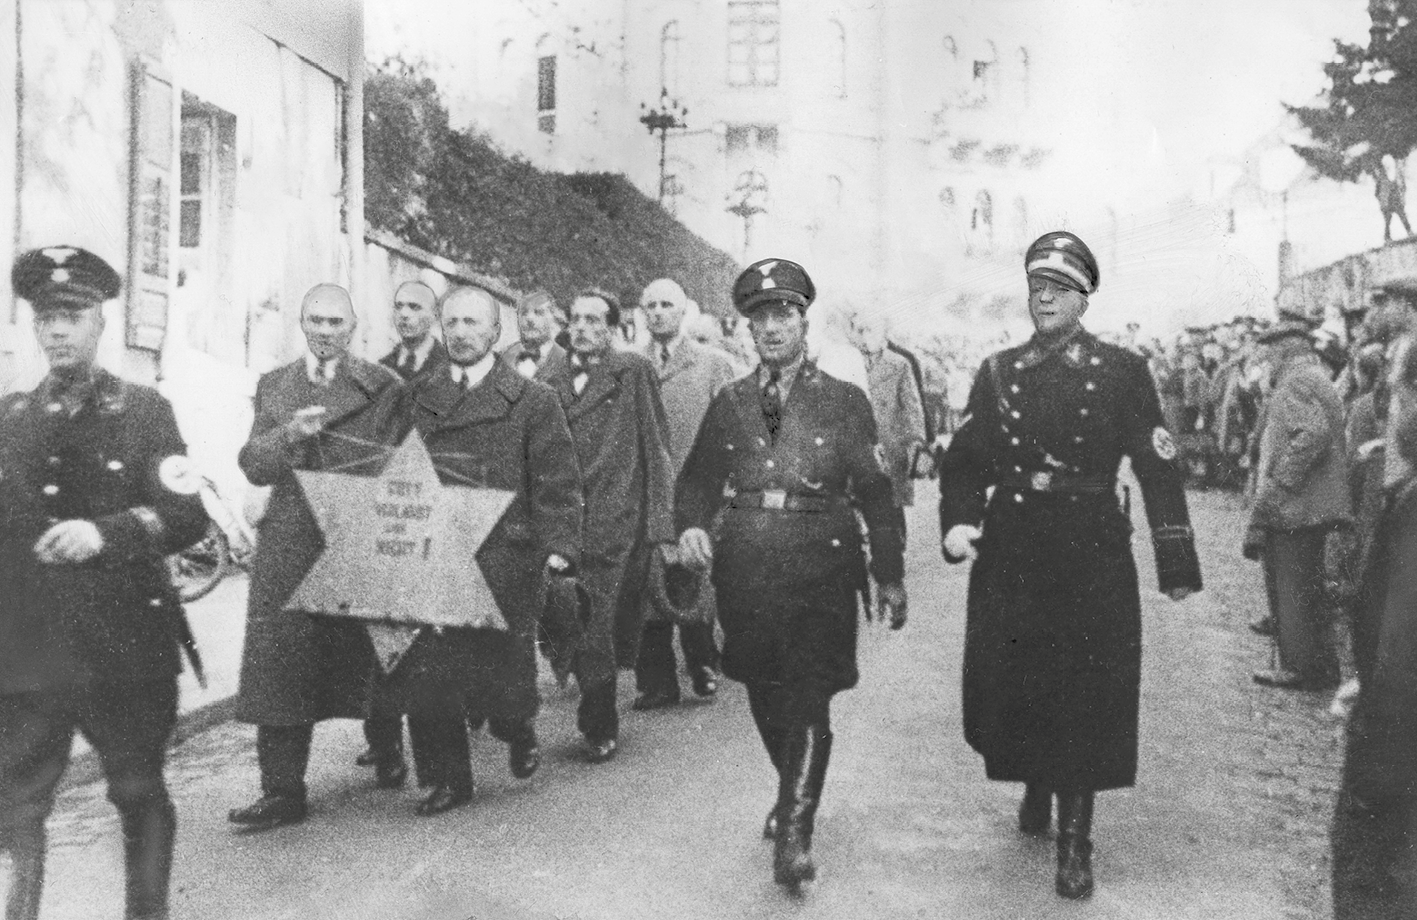 Fotografia em preto e branco. Judeus em duplas em uma longa fila. Caminham pela rua escoltados por militares. A dupla da frente carrega uma estrela de Davi, símbolo do judaísmo.